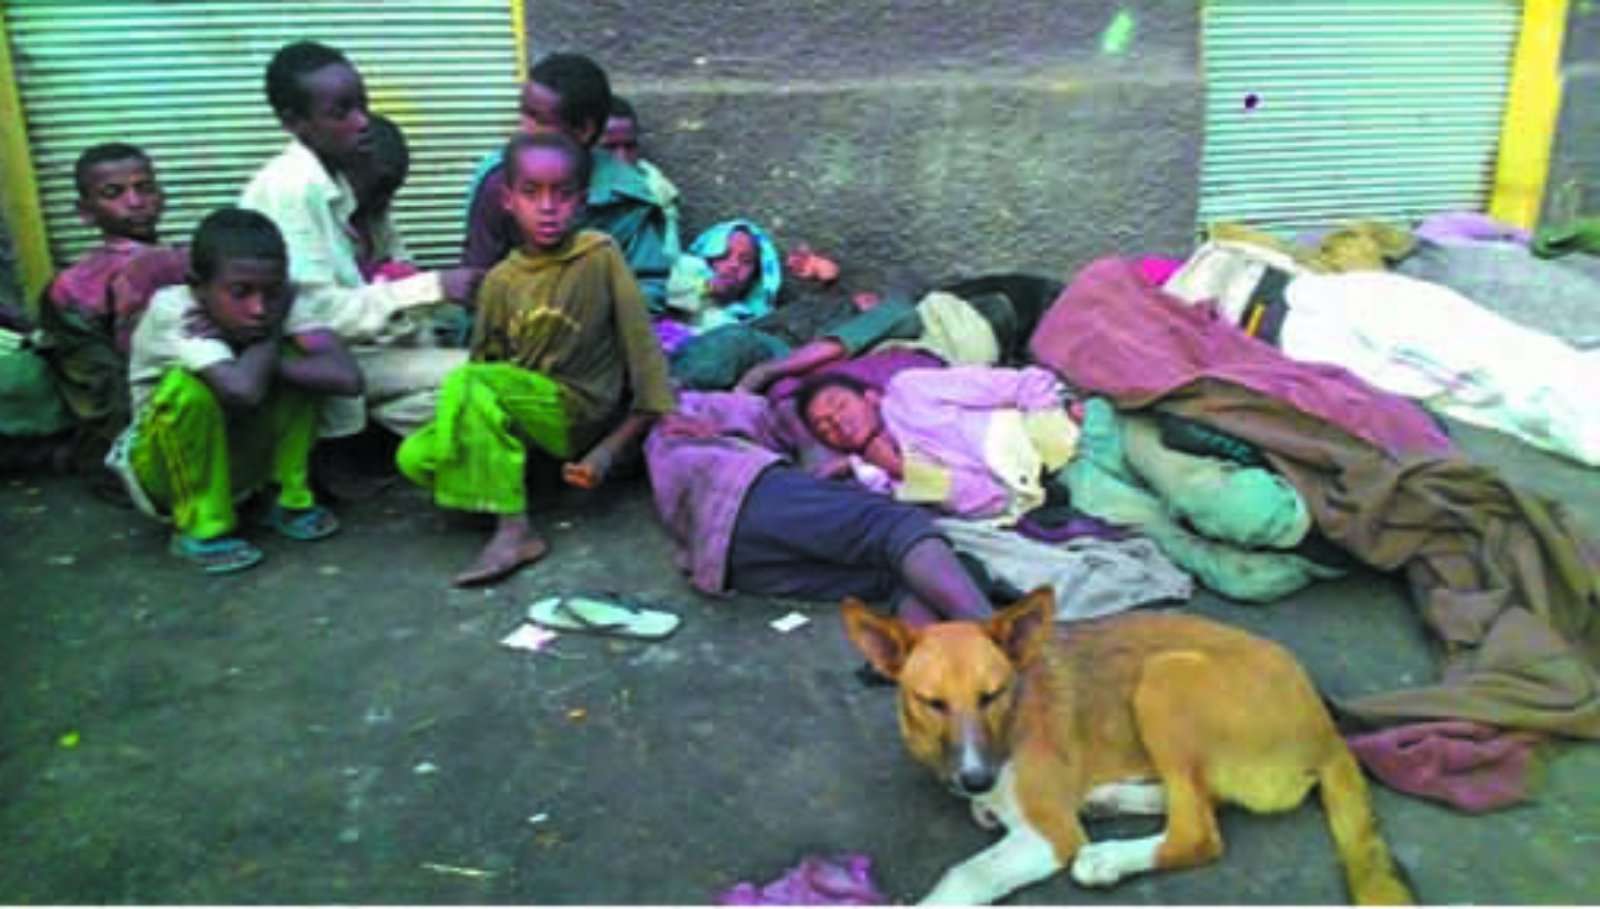 Tesfa's Children Homeless Shelter in Harar, Ethiopia